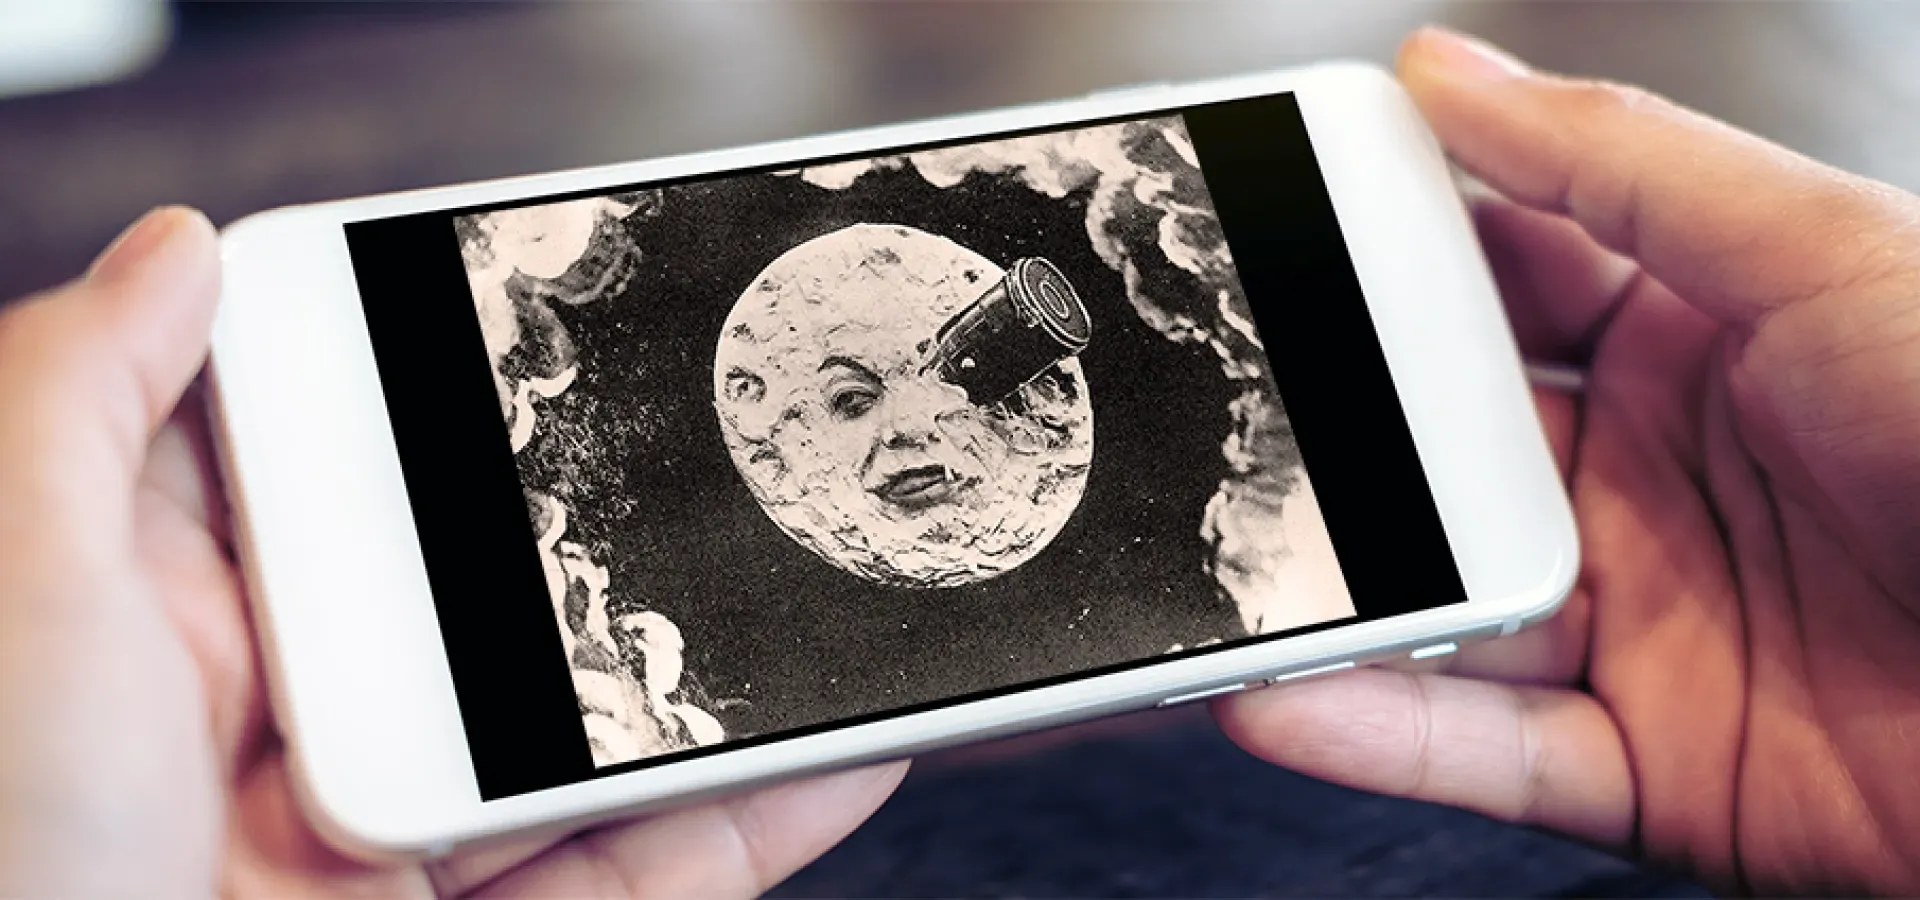 手机屏幕上1902年电影《月球之旅》的剧照